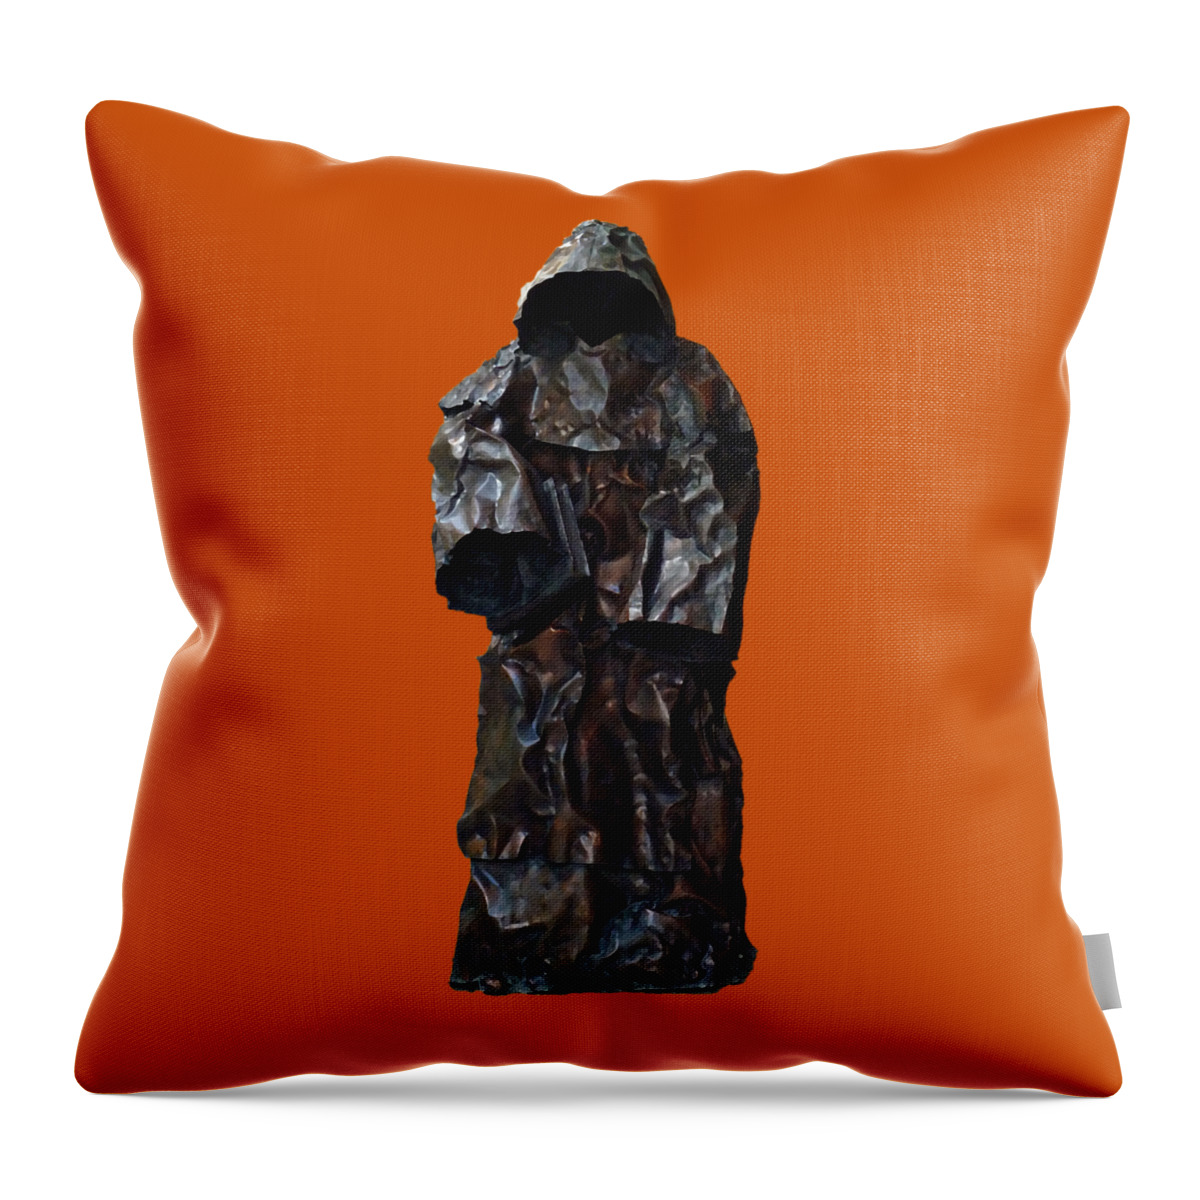 Digital Art Throw Pillow featuring the digital art Iron Robe Art by Francesca Mackenney